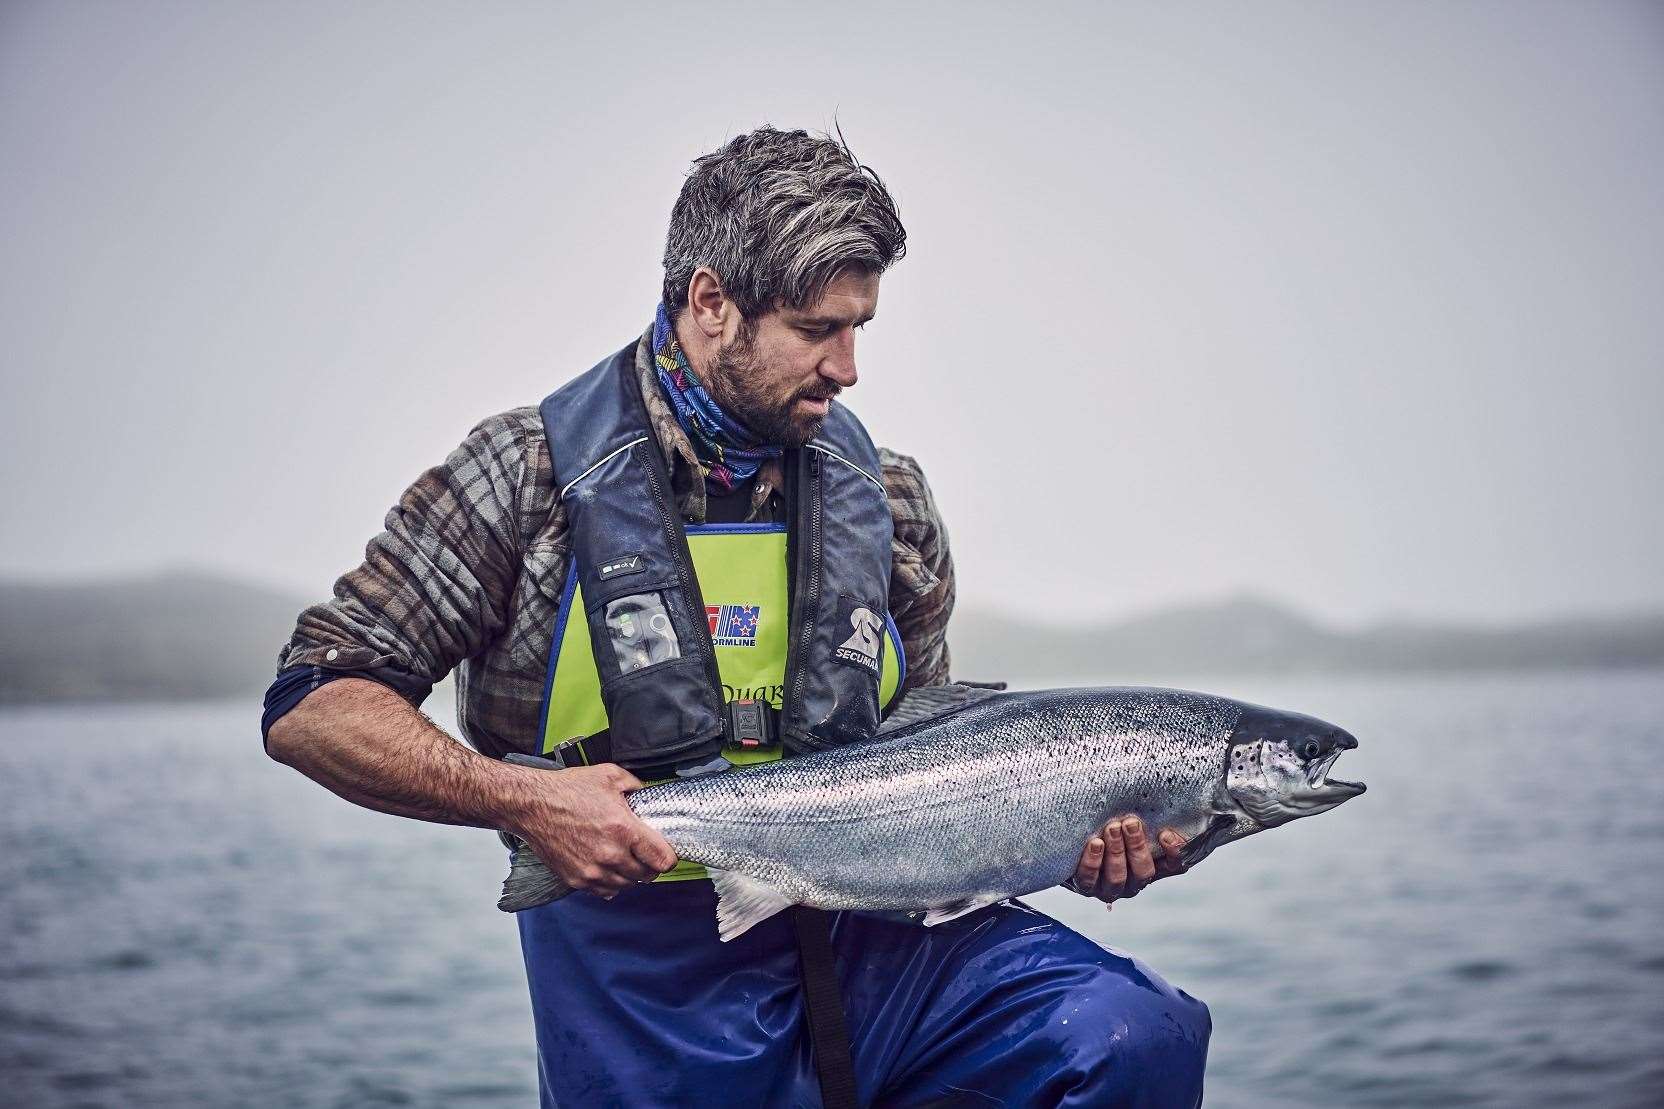 A Loch Duart husbandryman holding a salmon.